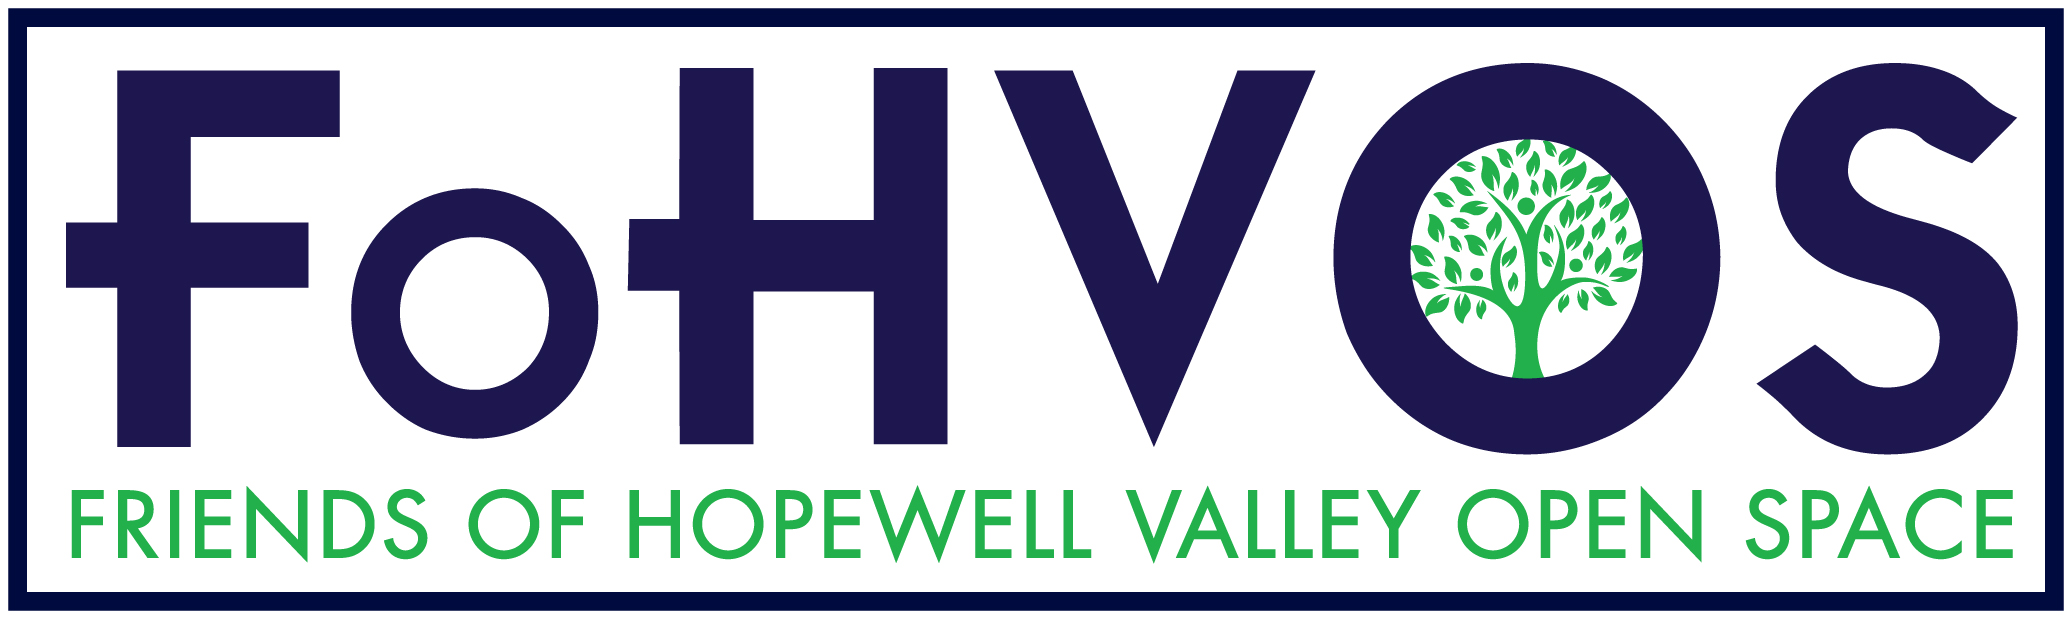 Friends of Hopewell Valley Open Space Seek Land Steward Intern